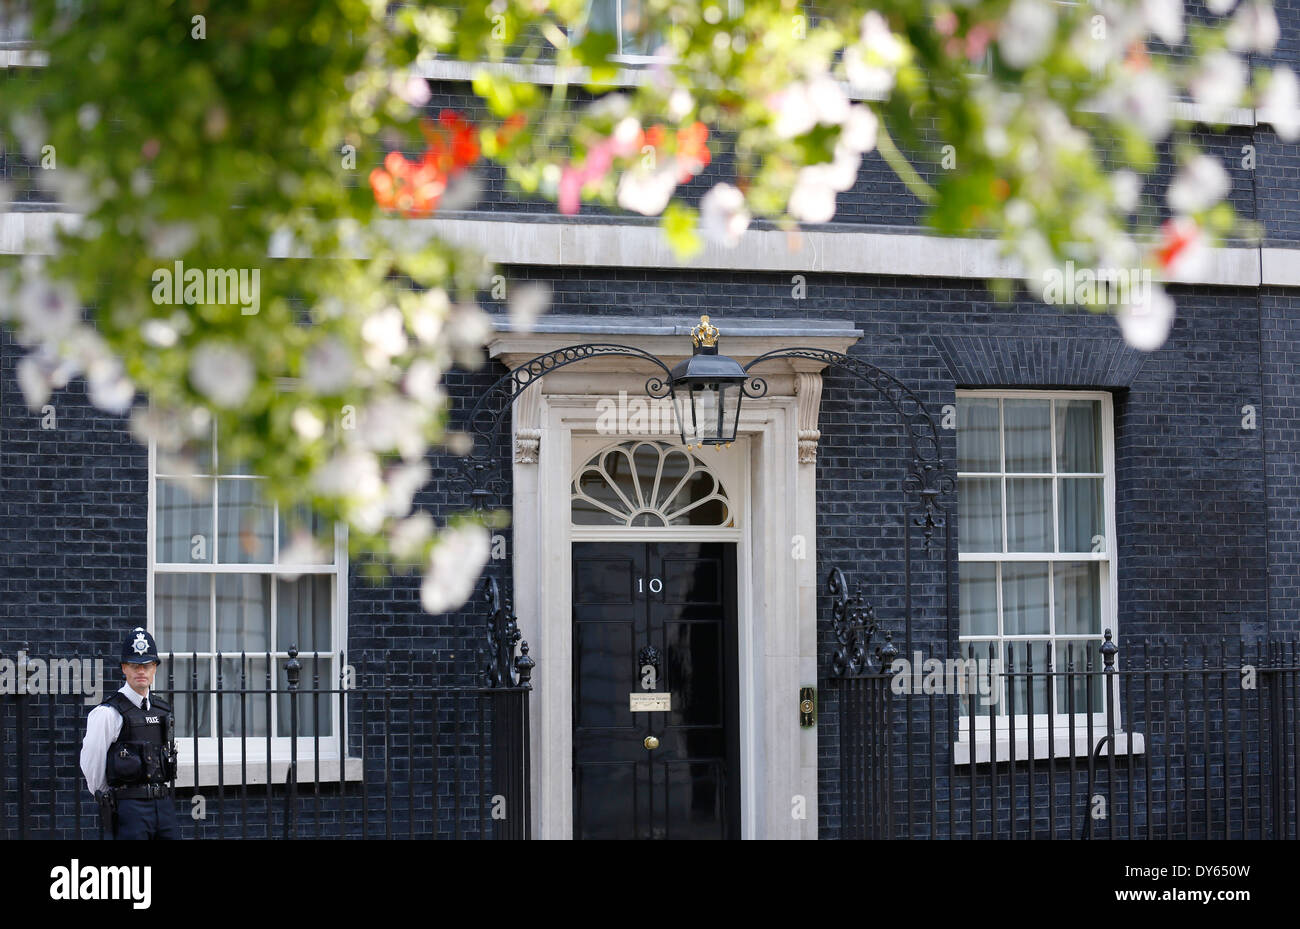 Regno Unito, Londra : numero 10 di Downing Street, casa del Primo ministro britannico, è raffigurato in una giornata di sole a Londra. Foto Stock